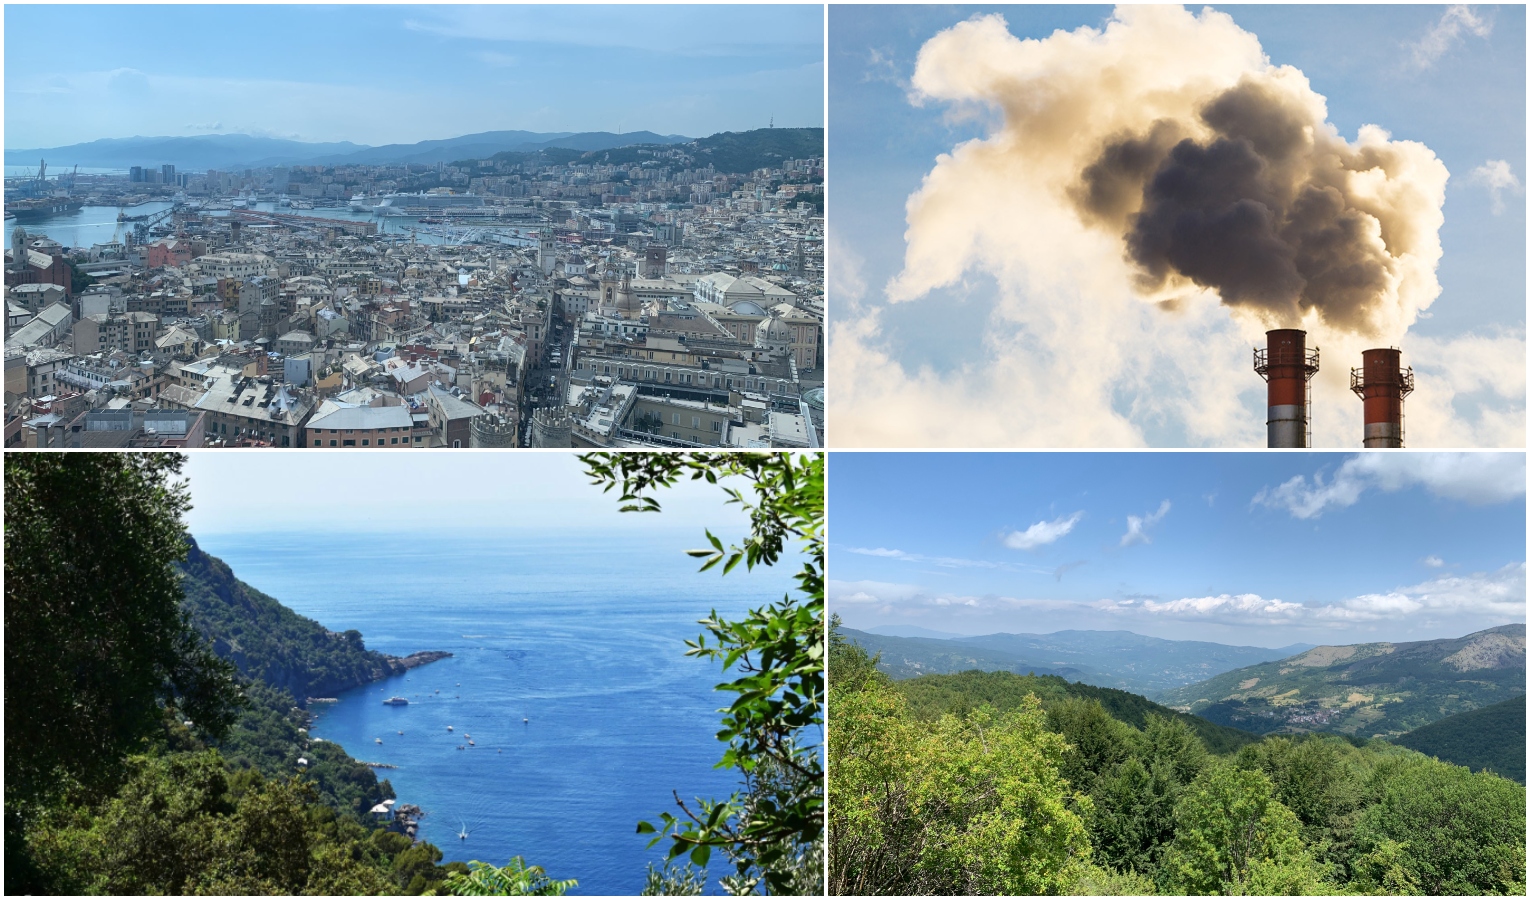 Riduzione gas serra, Liguria regina d'Europa: - 68% in 30 anni